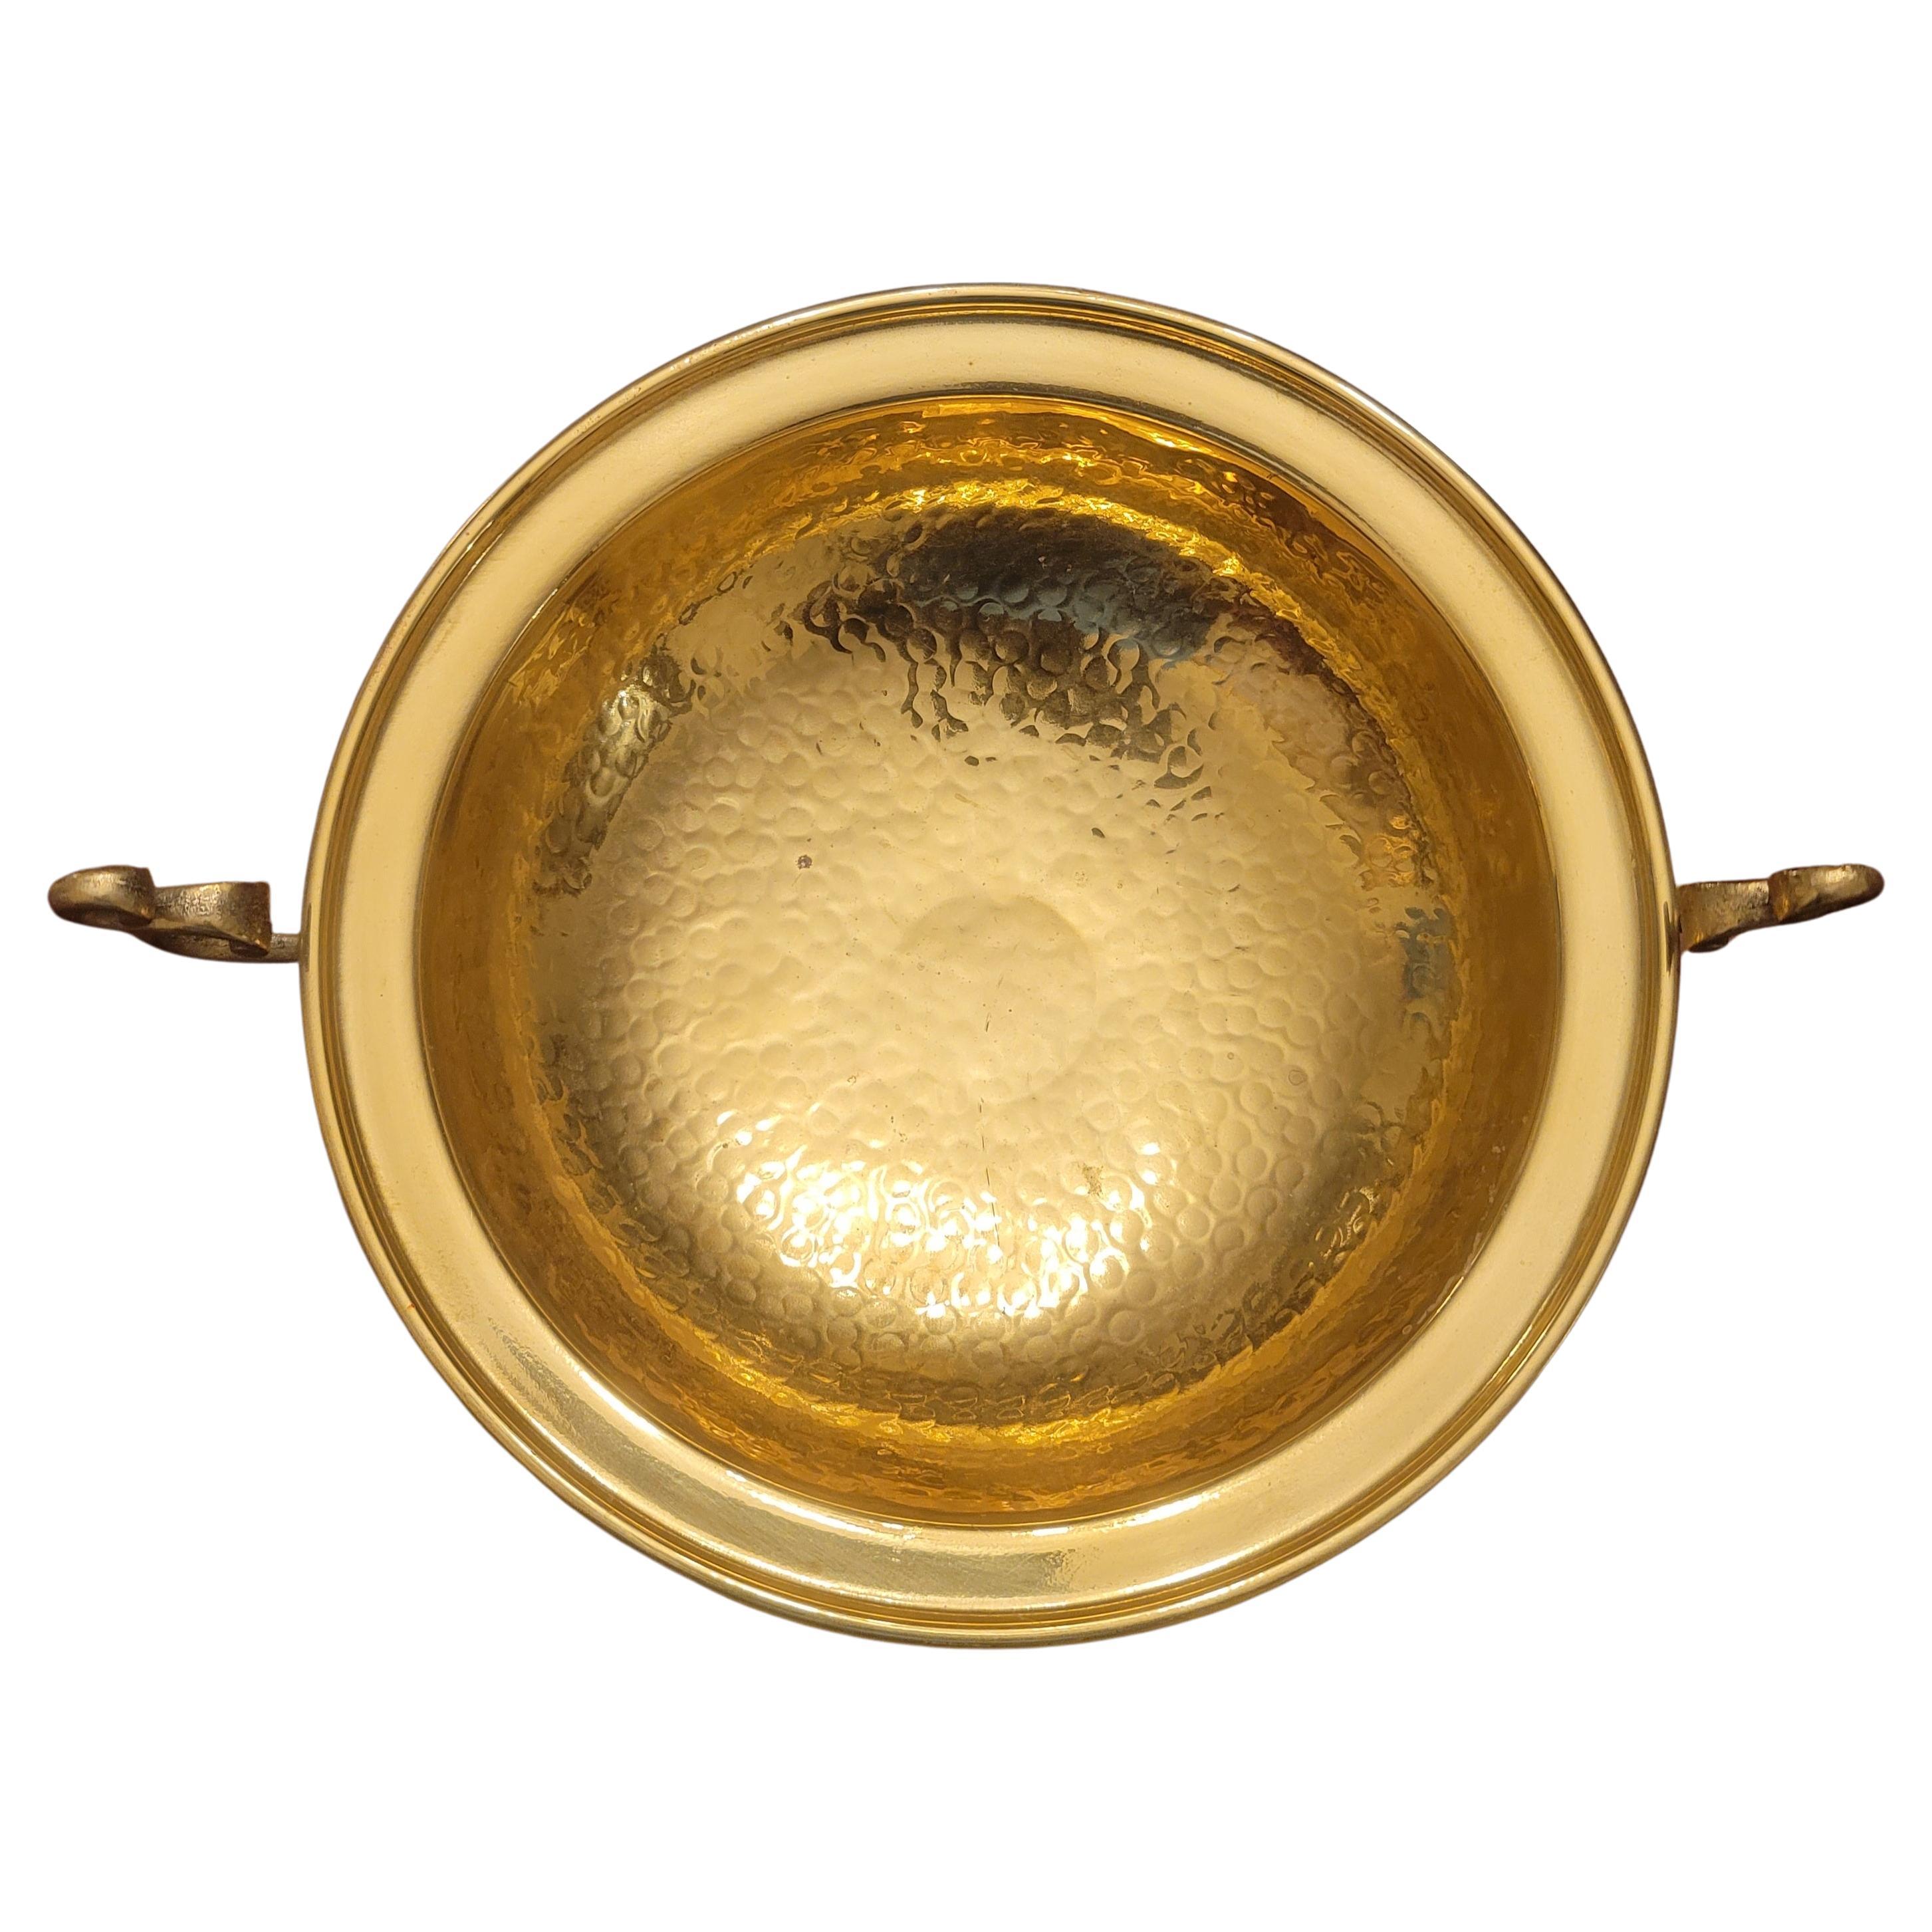 Large Ornate Engraved and Polished Brass Decorative Samovar Set For Sale 4